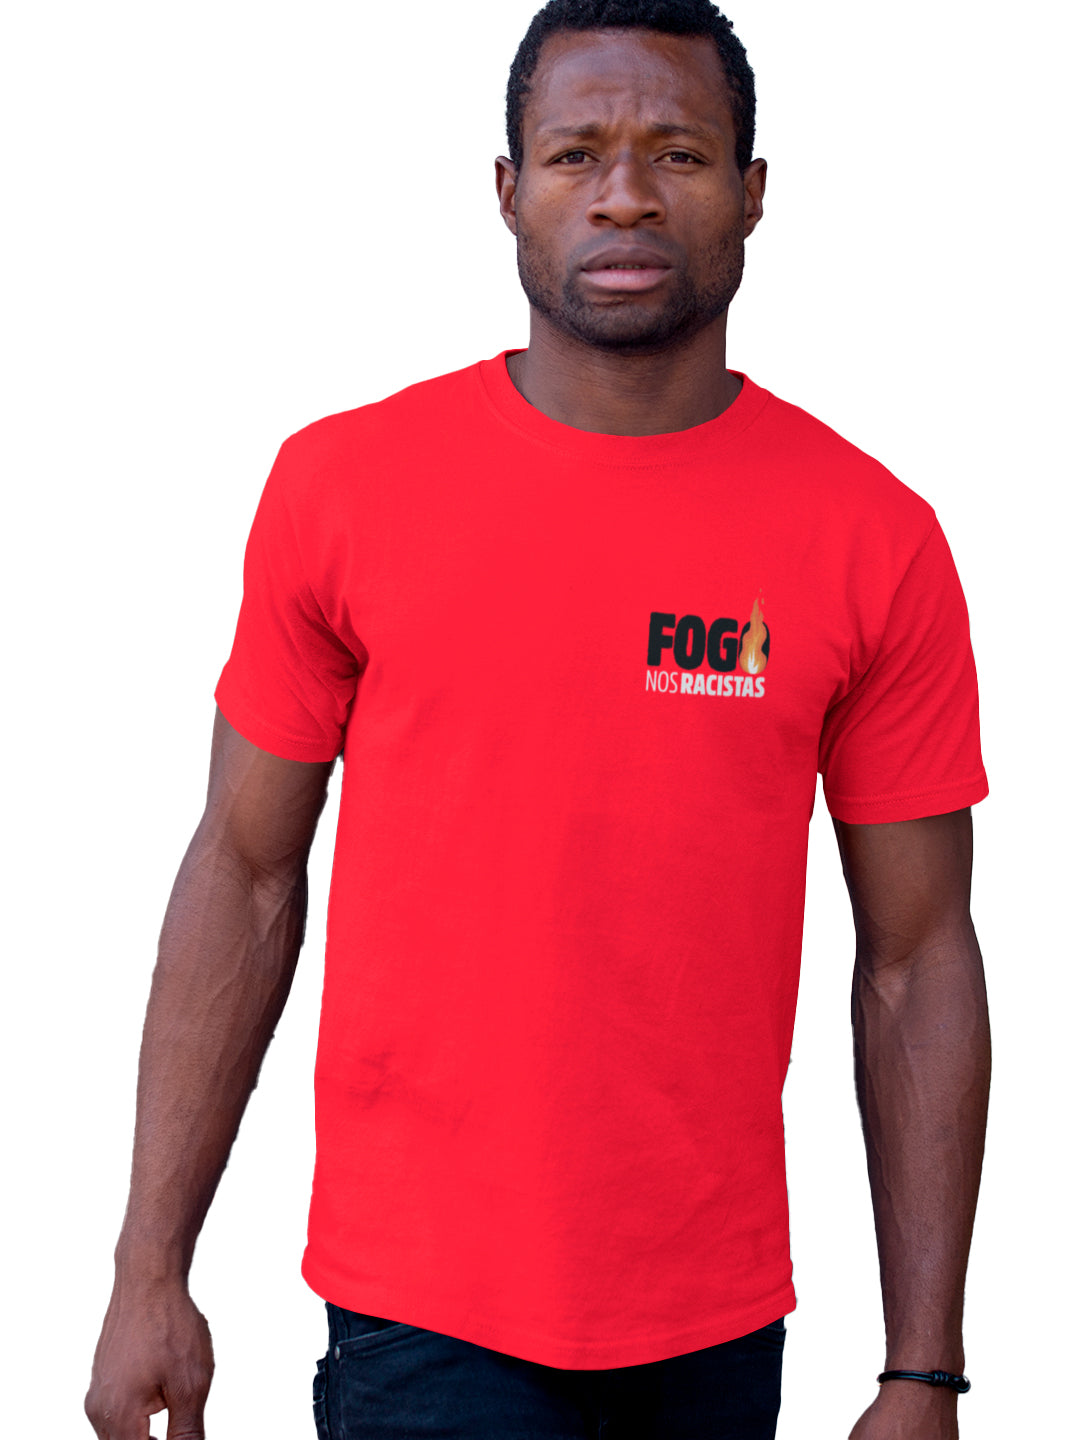 homem vestindo a camiseta masculina cor vermelha com estampa frase fogo nos racistas e ilustração de chamas